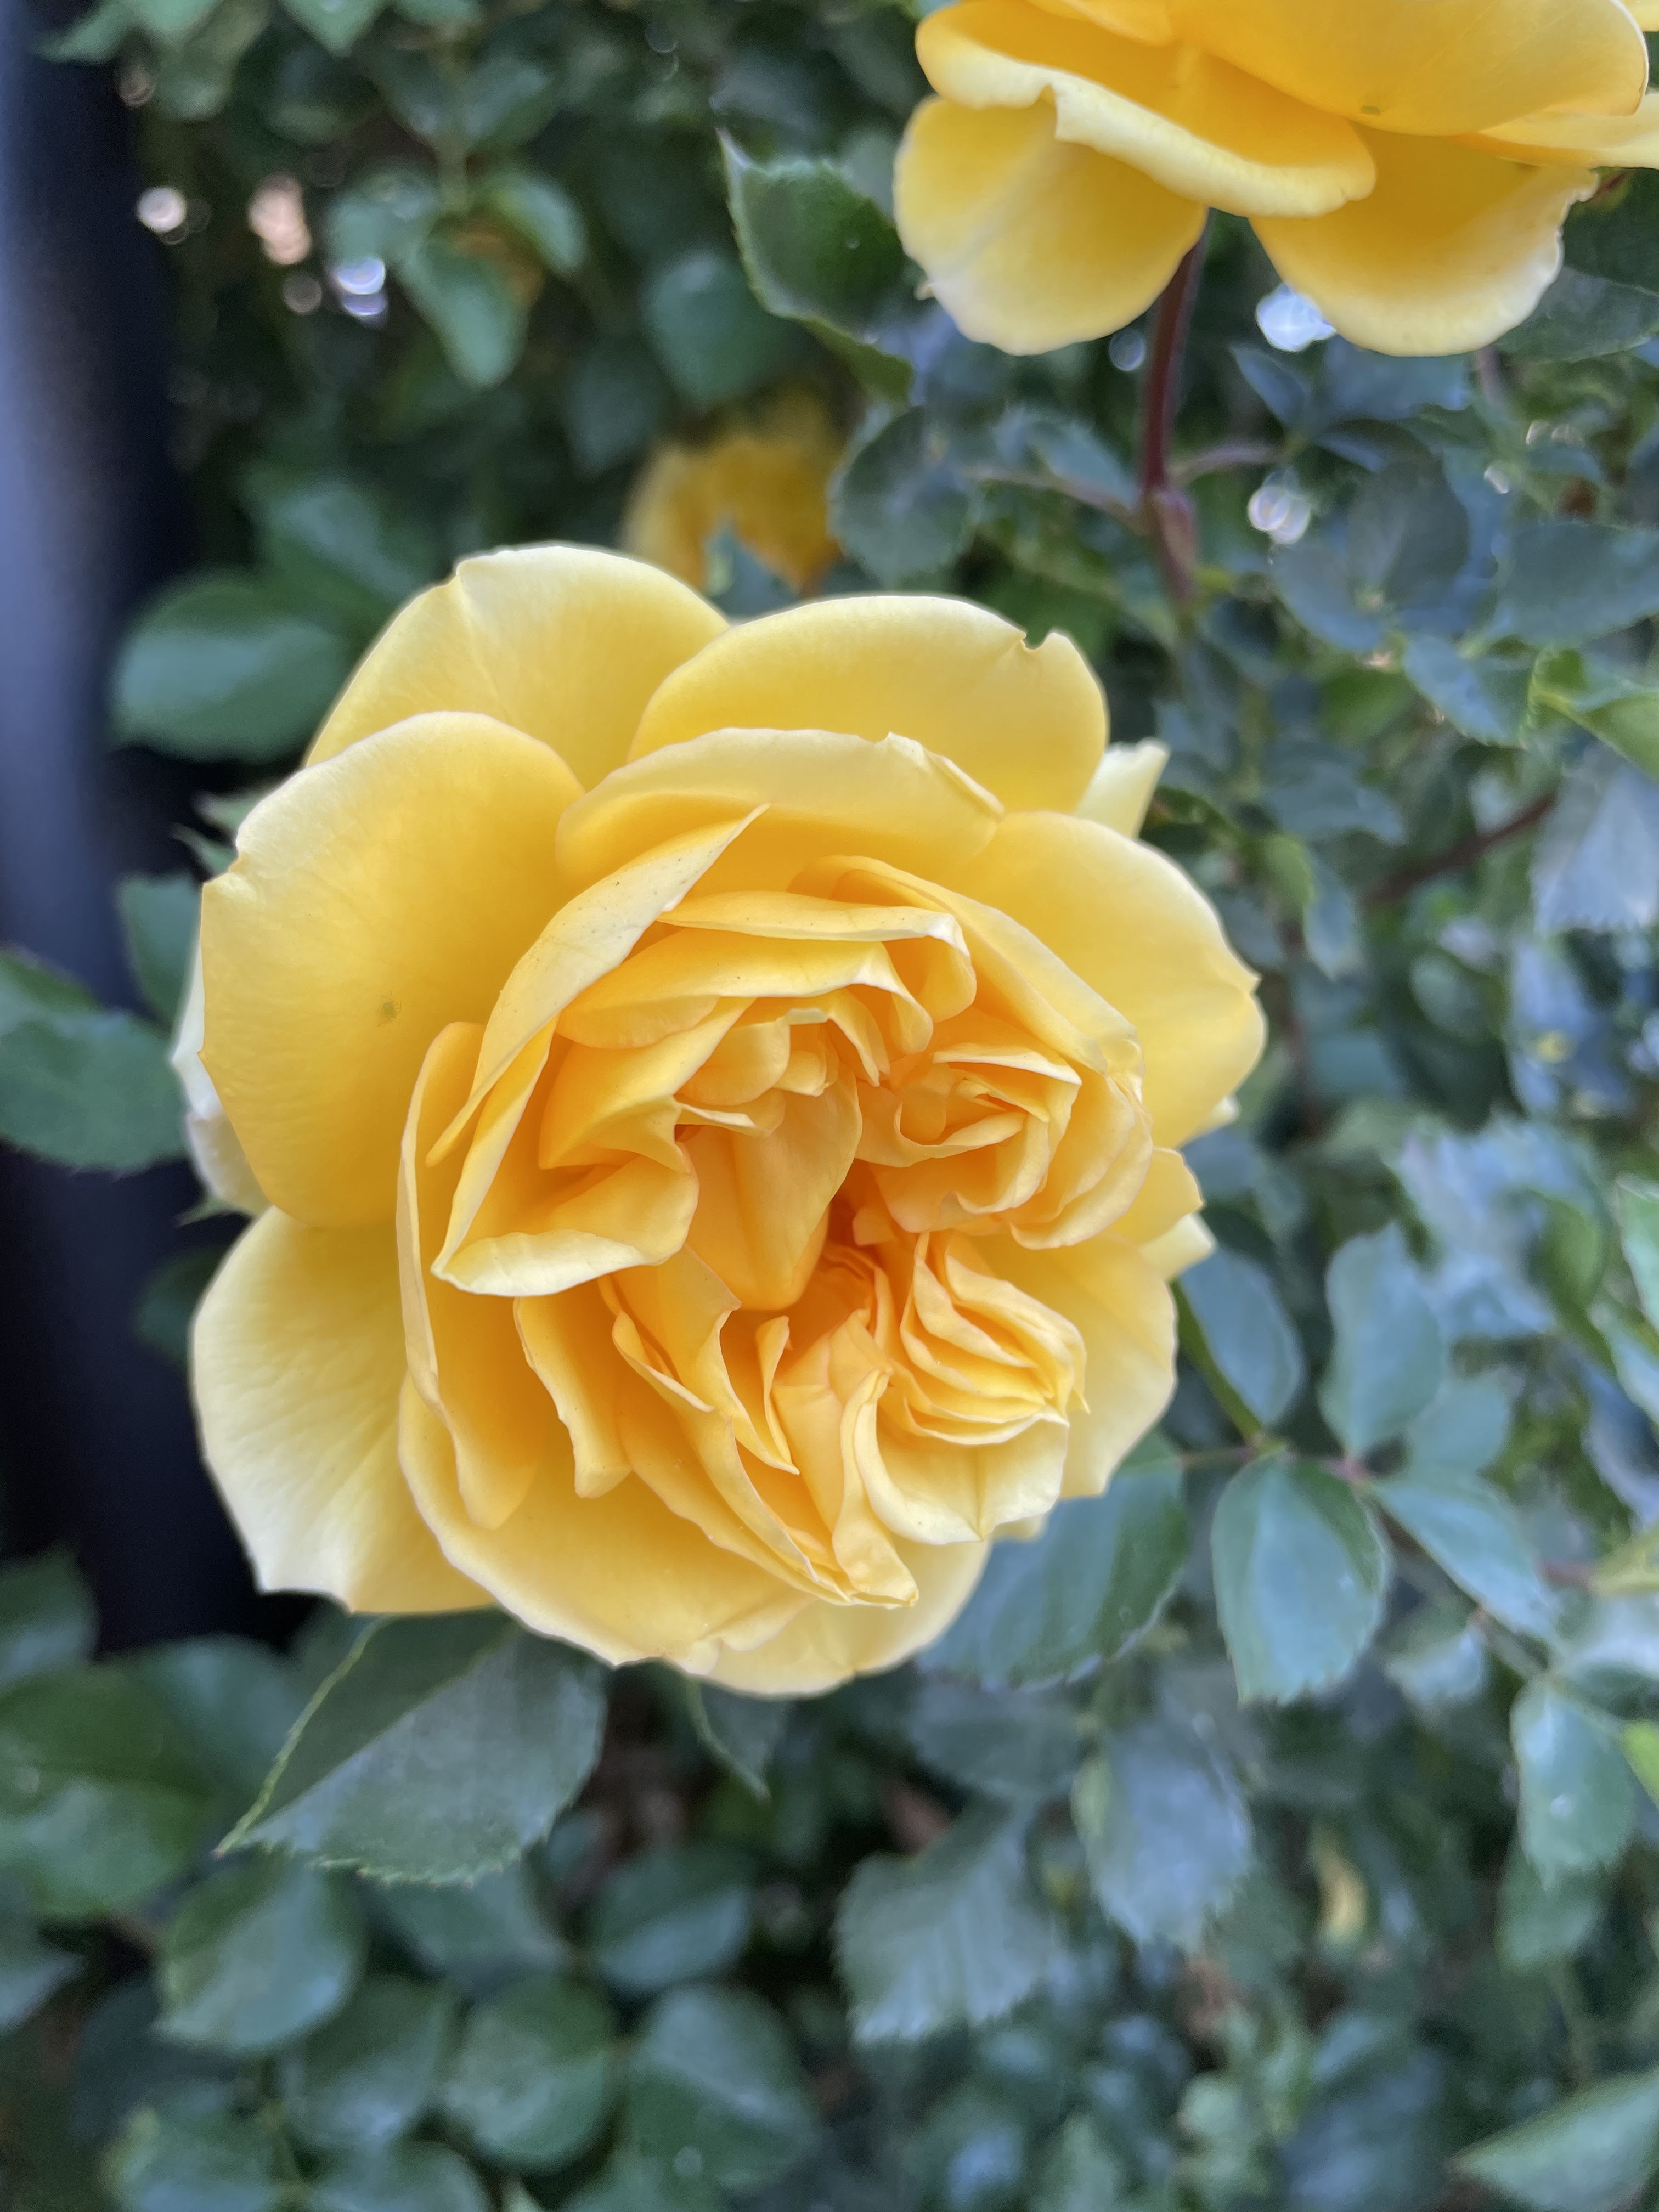 Hoa hồng vàng mang trong mình một sắc vàng tươi mới và tươi sáng. Với ảnh hoa hồng vàng độc đáo này, bạn sẽ được chiêm ngưỡng một loại hoa thật độc đáo và hoàn toàn khác biệt, chắc chắn sẽ làm say đắm bất cứ ai.